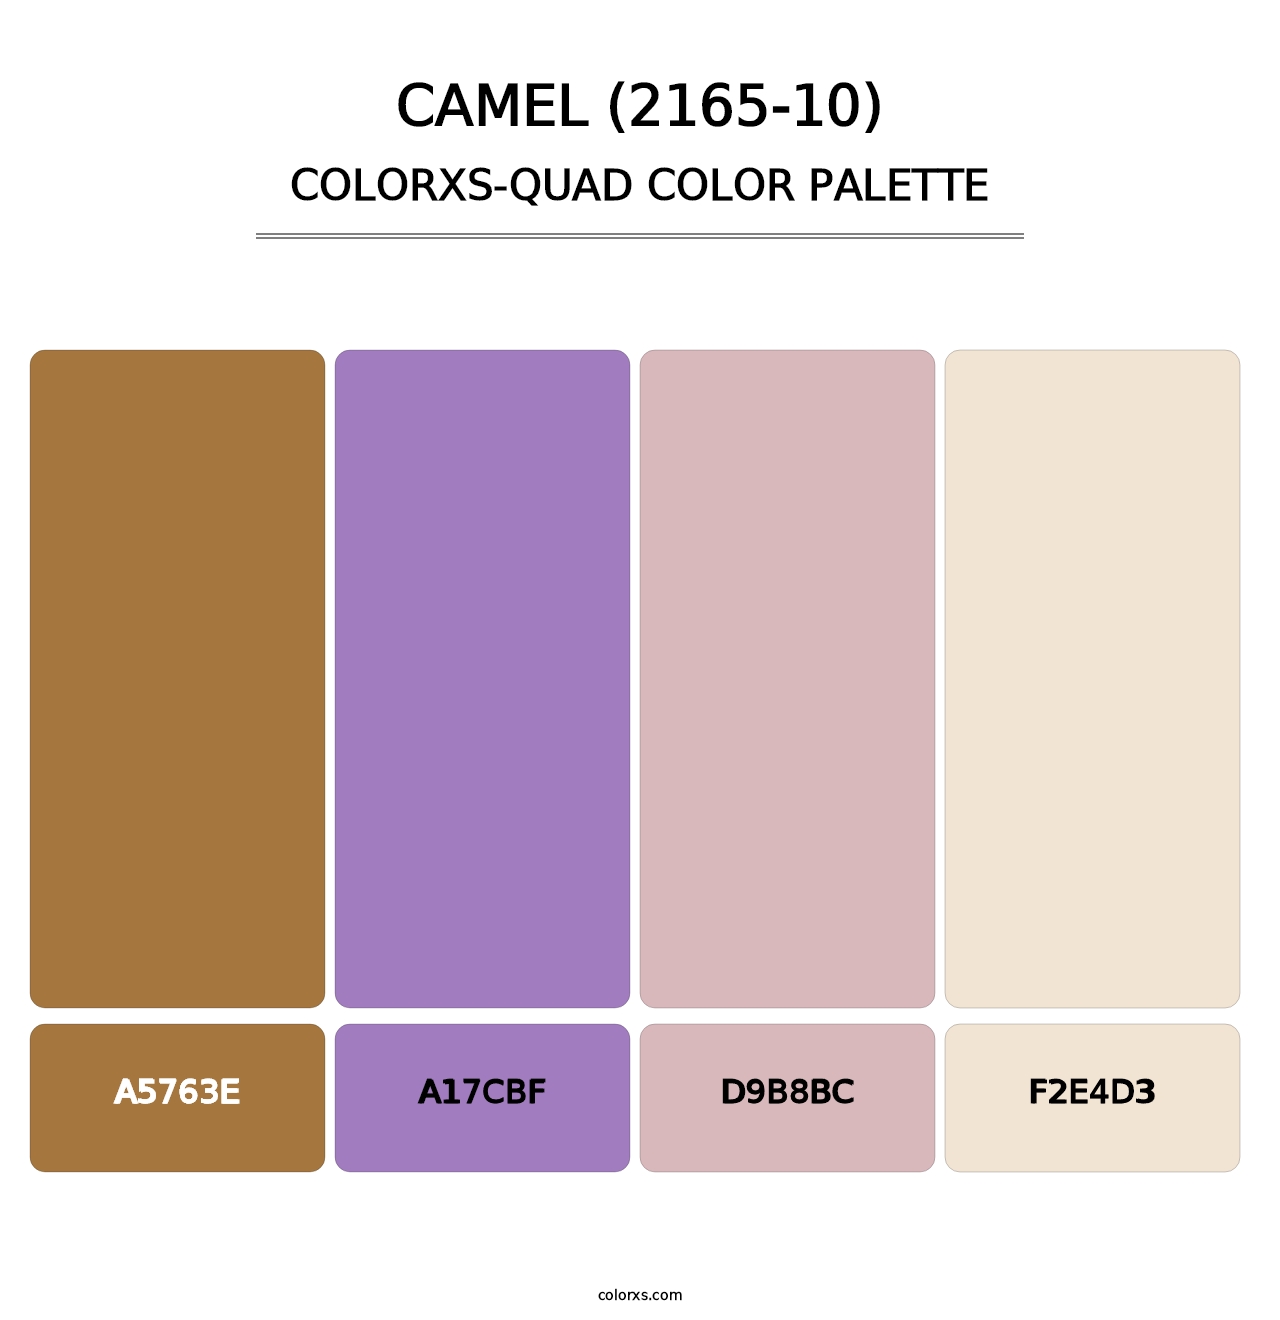 Camel (2165-10) - Colorxs Quad Palette